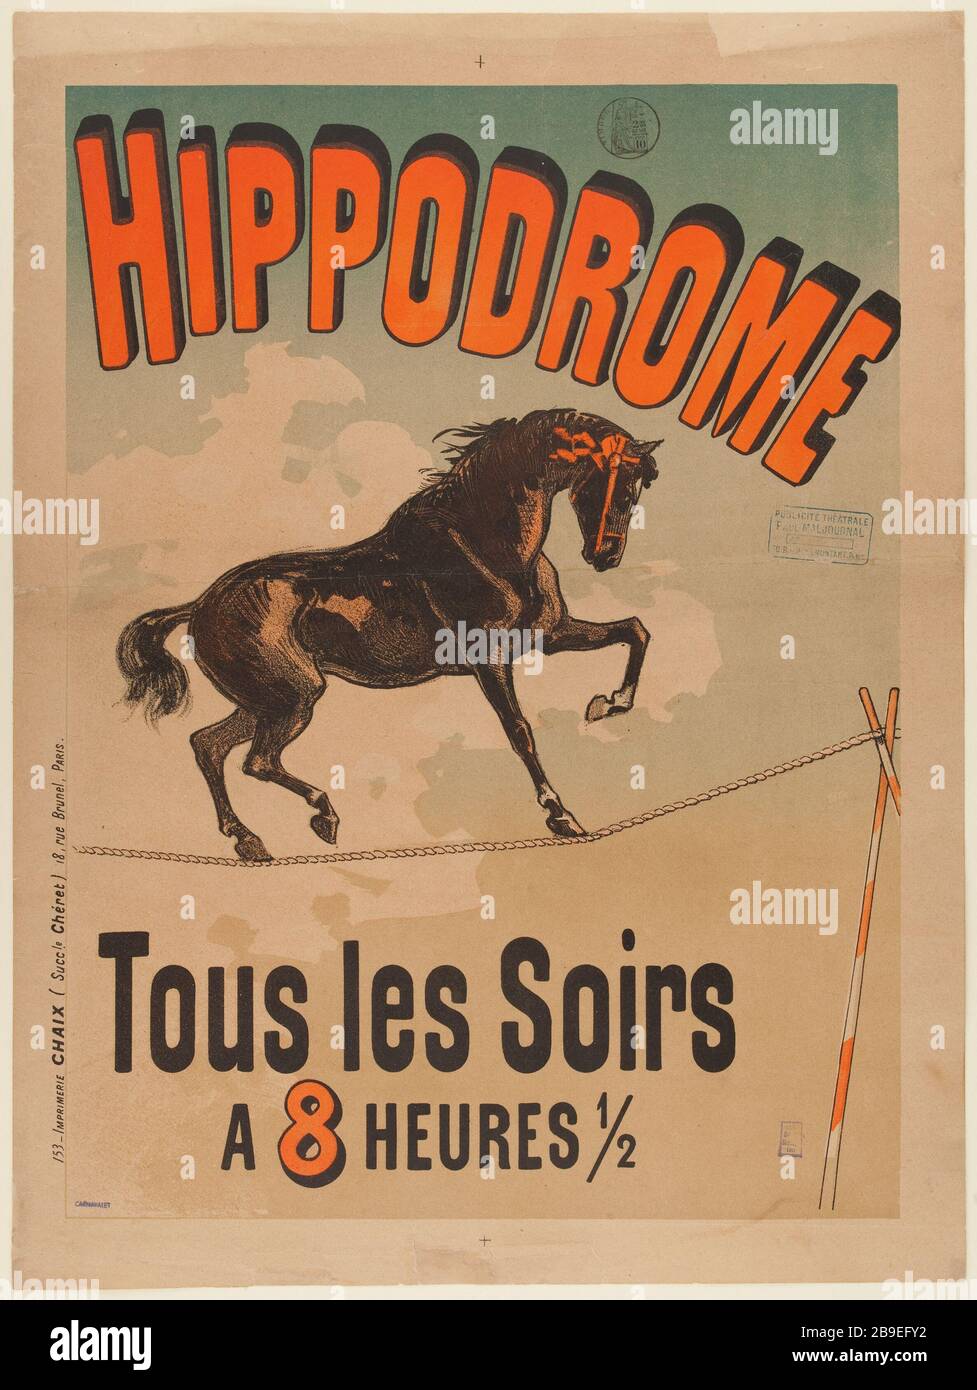 HIPÓDROMO, TODAS LAS NOCHES 'Hipódromo, Tous les Soirs'. Lithographie. 1885. París, musée Carnavalet. Foto de stock